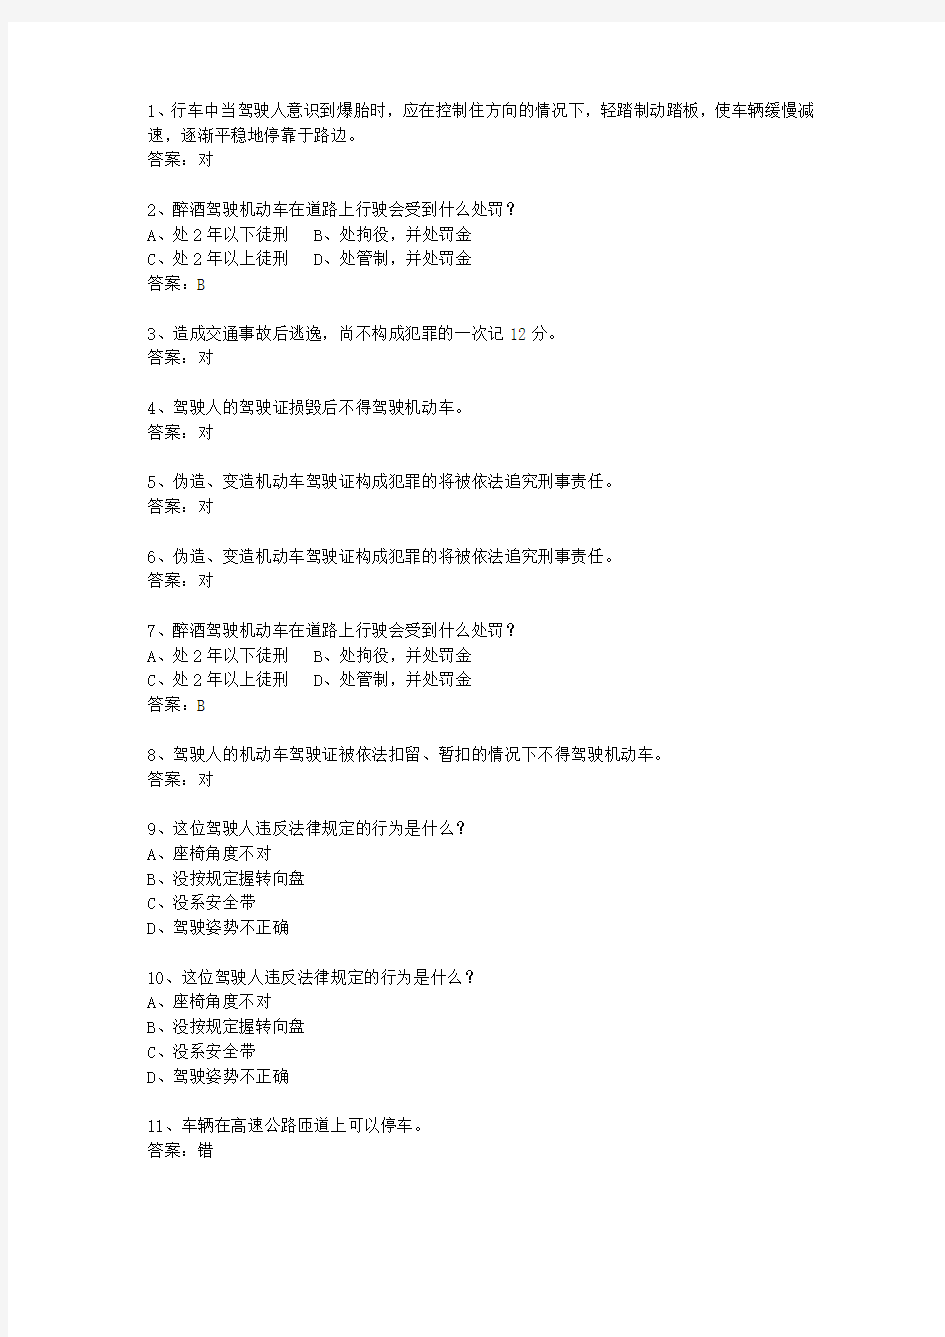 2014湖南省驾校考试科目一自动档最新考试题库(完整版)_图文